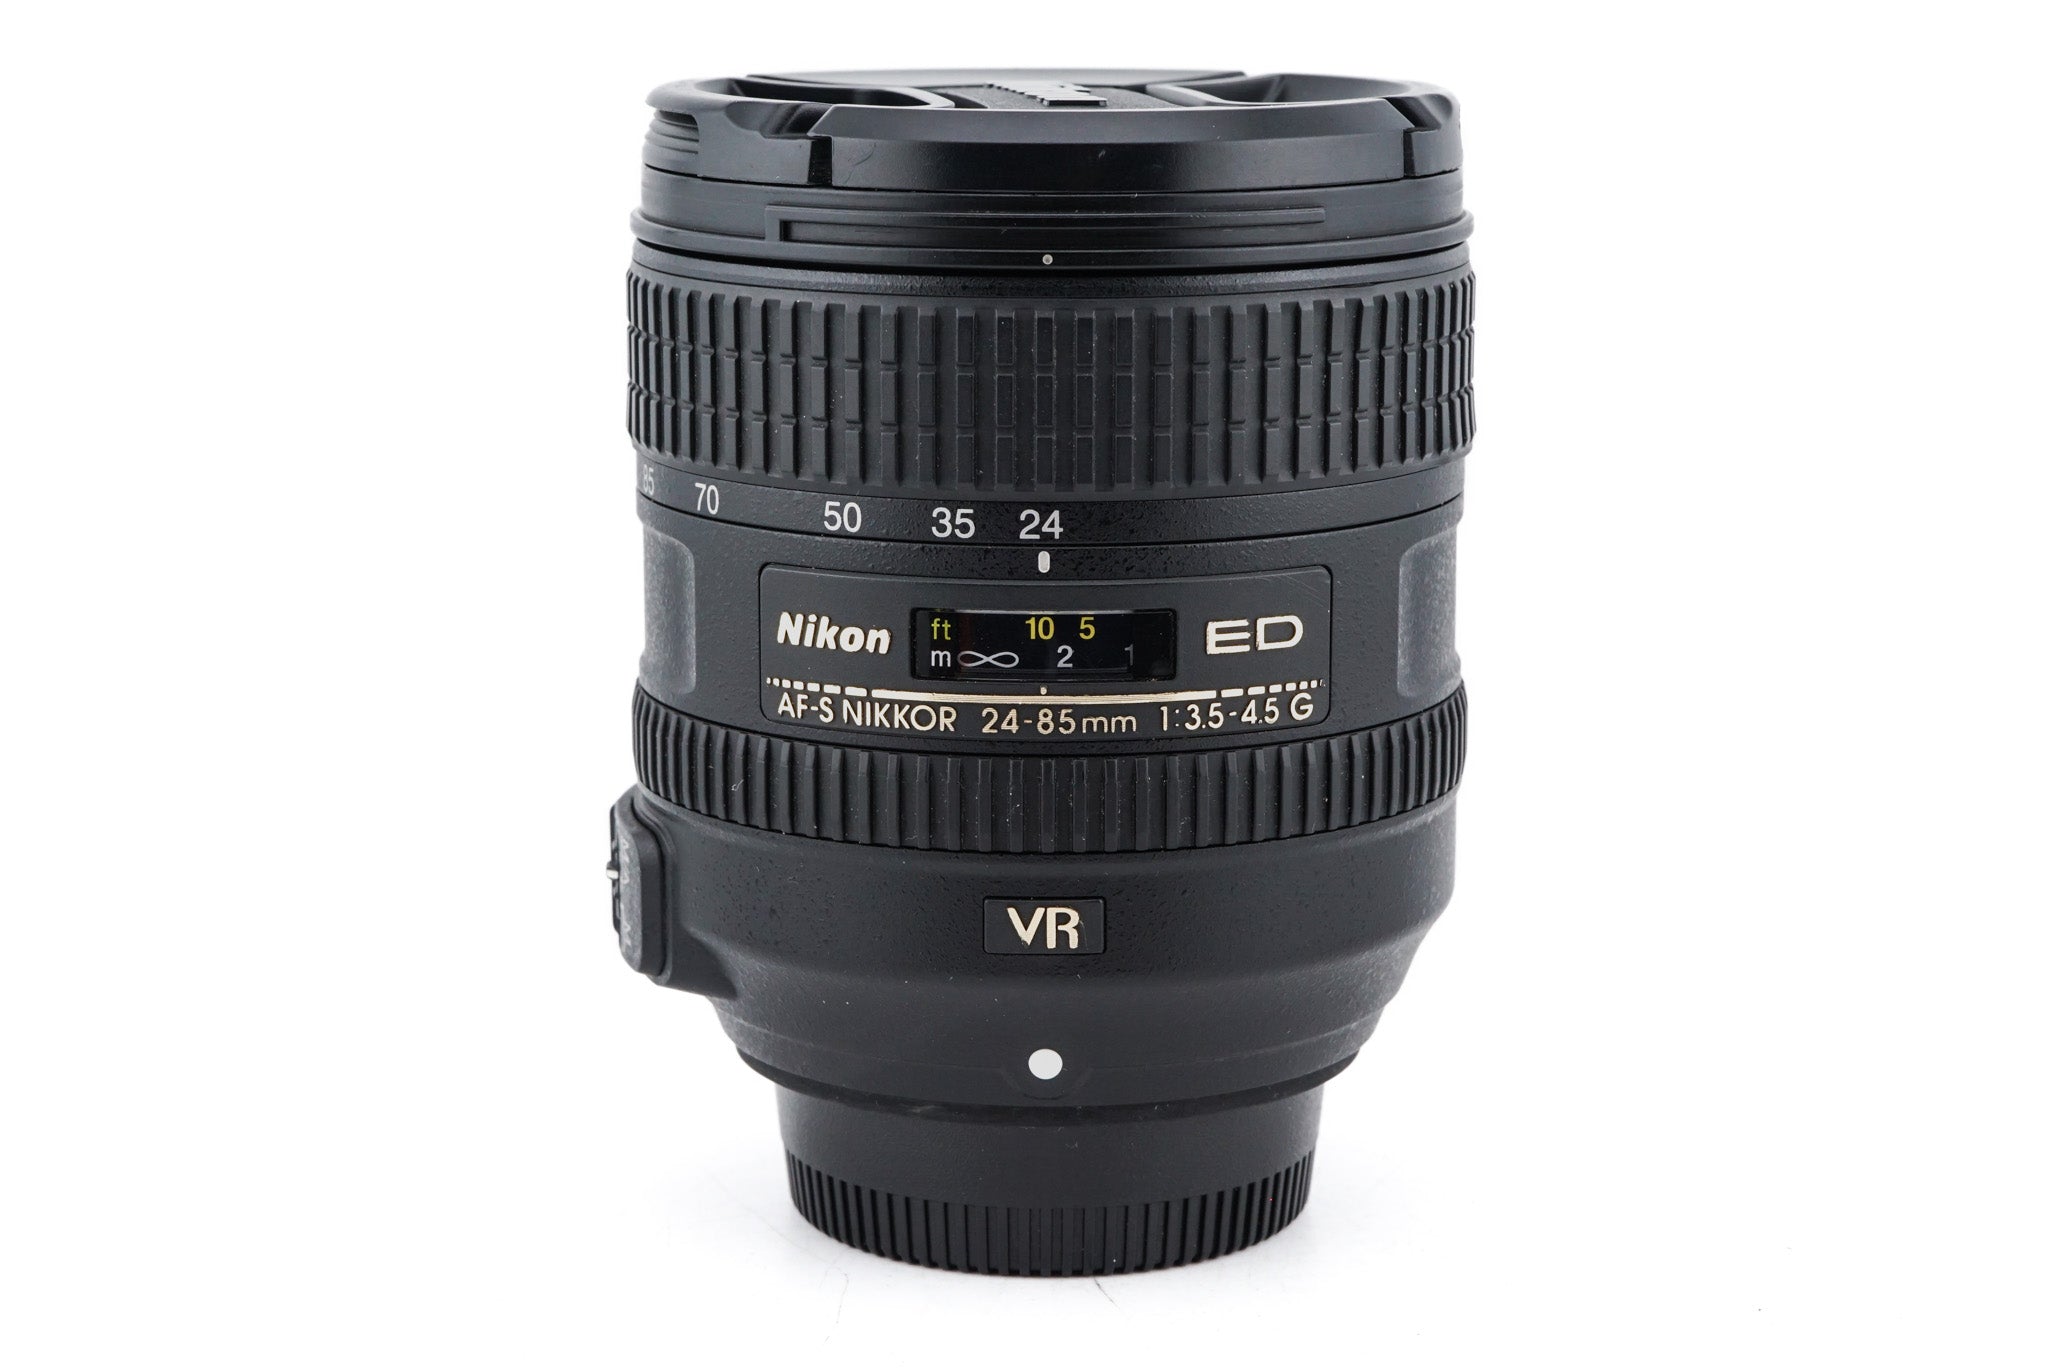 Nikon AF-S Zoom Nikkor 24-85mm F3.5-4.5G - レンズ(ズーム)